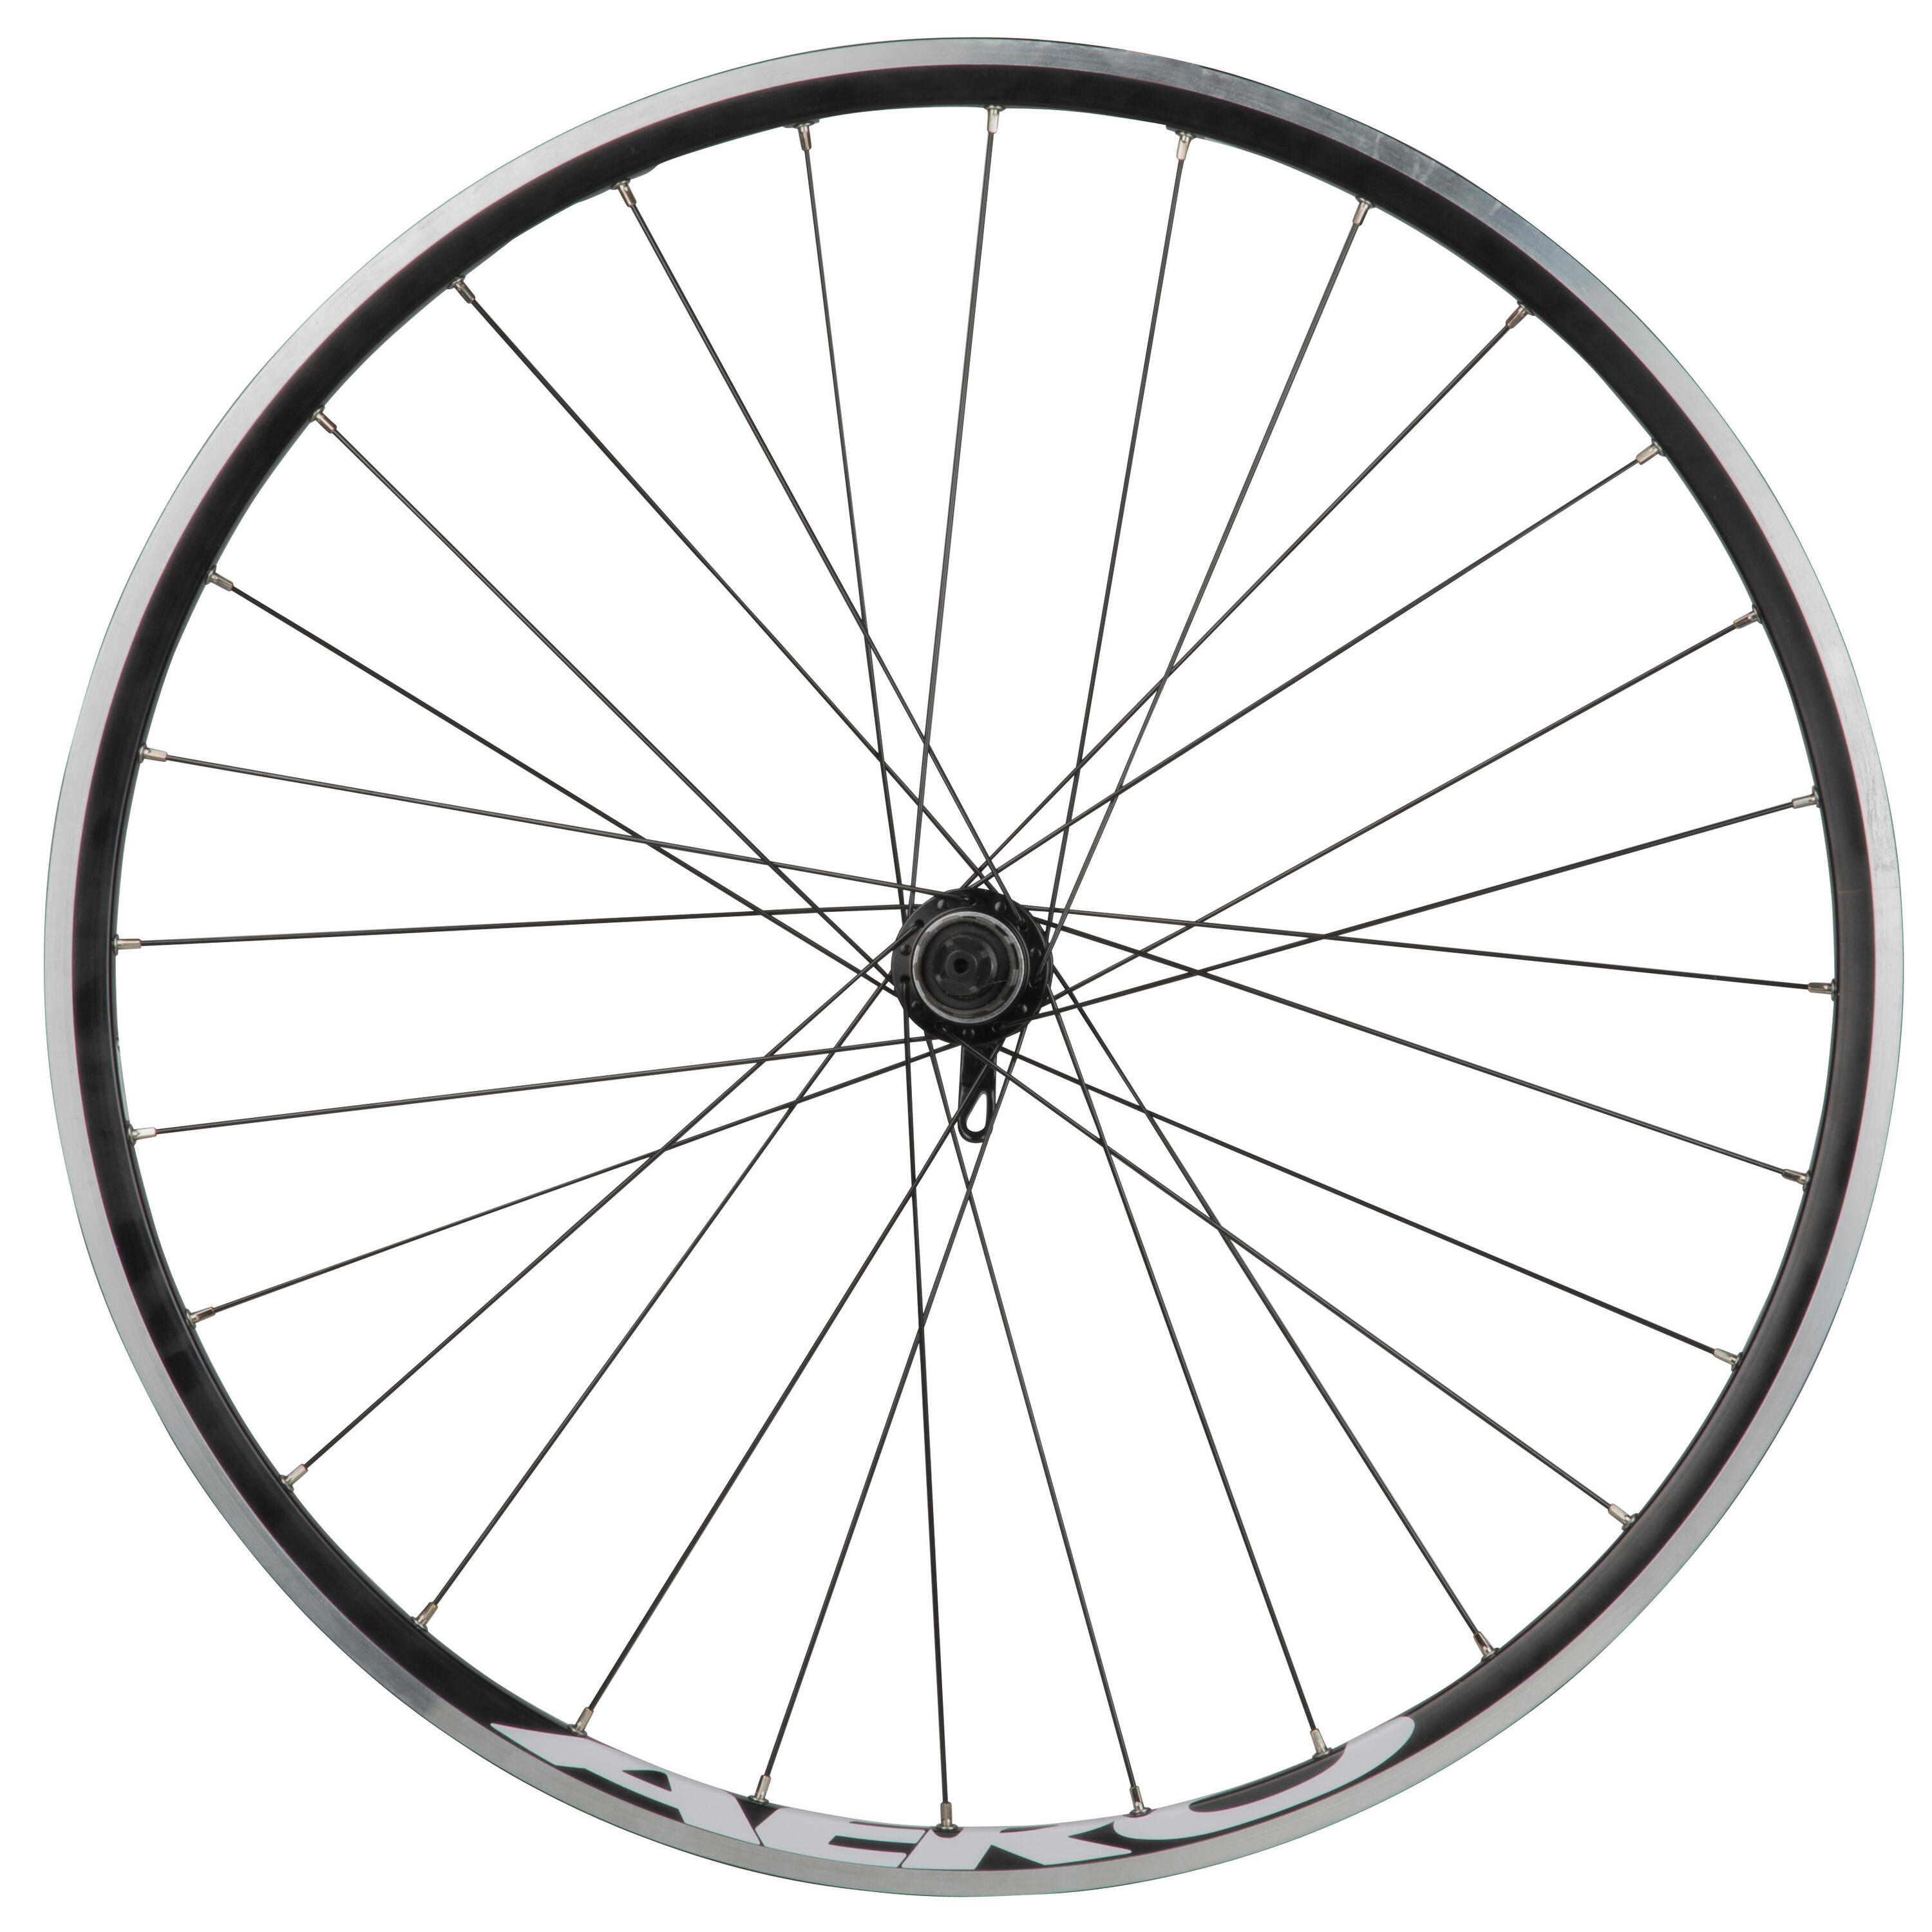 BTWIN Triban 520 700 Double-Walled Rear Road Bike Wheel with Cassette